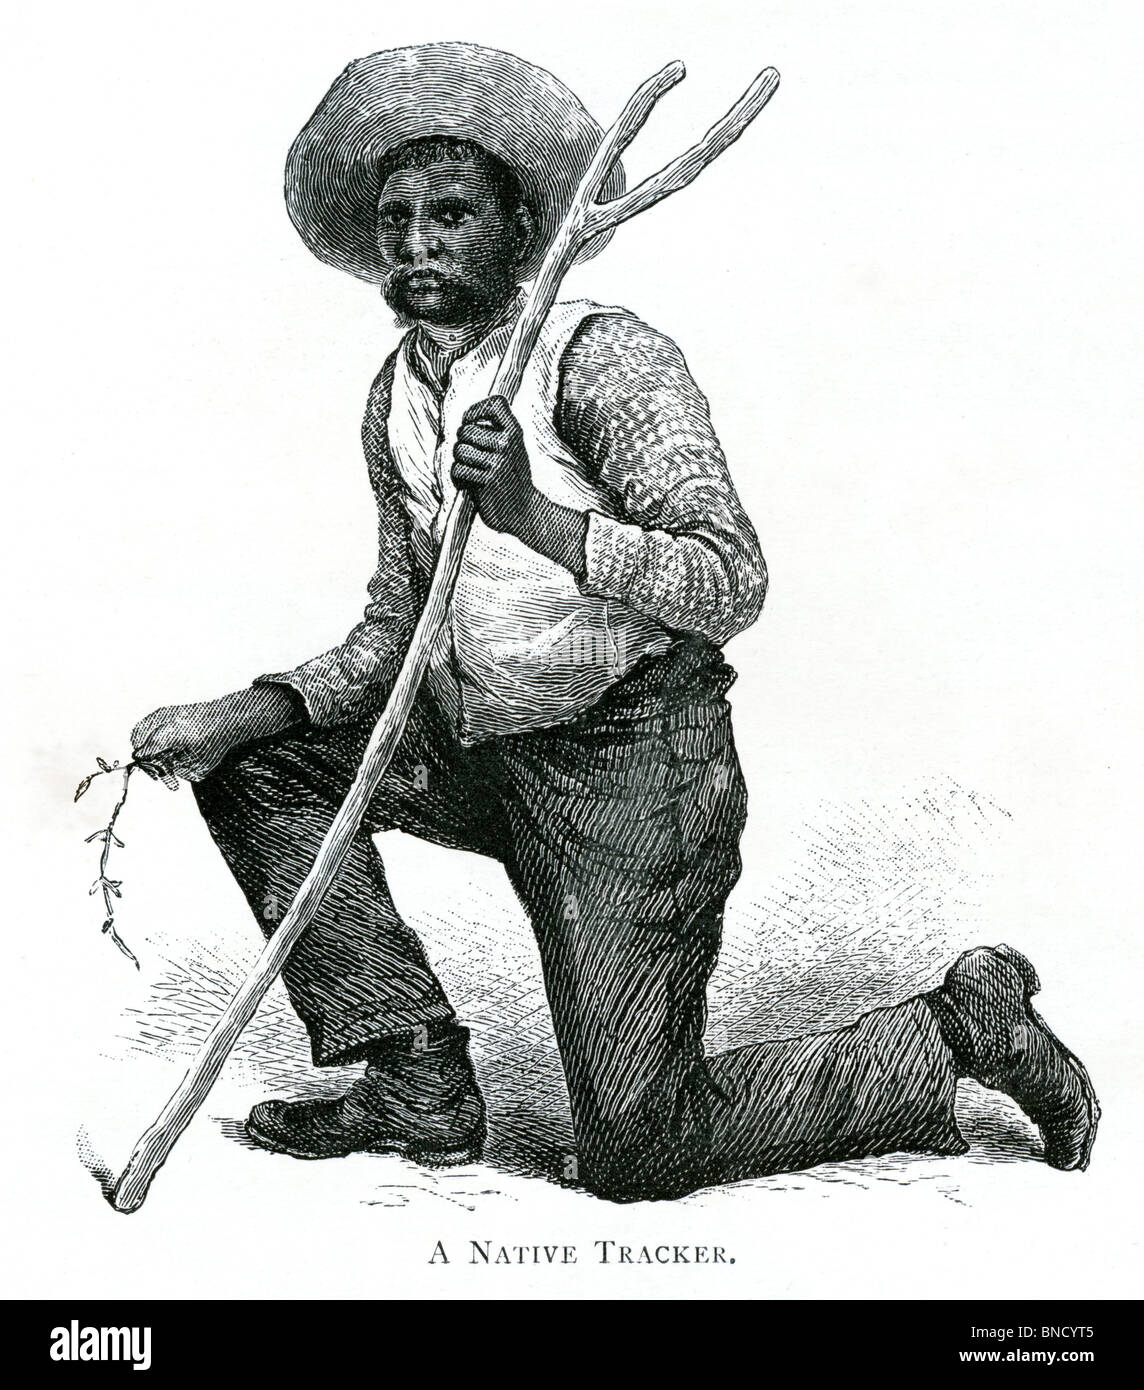 Une gravure d'un Tracker - publié dans un livre sur l'Australie imprimé en 1886. Banque D'Images